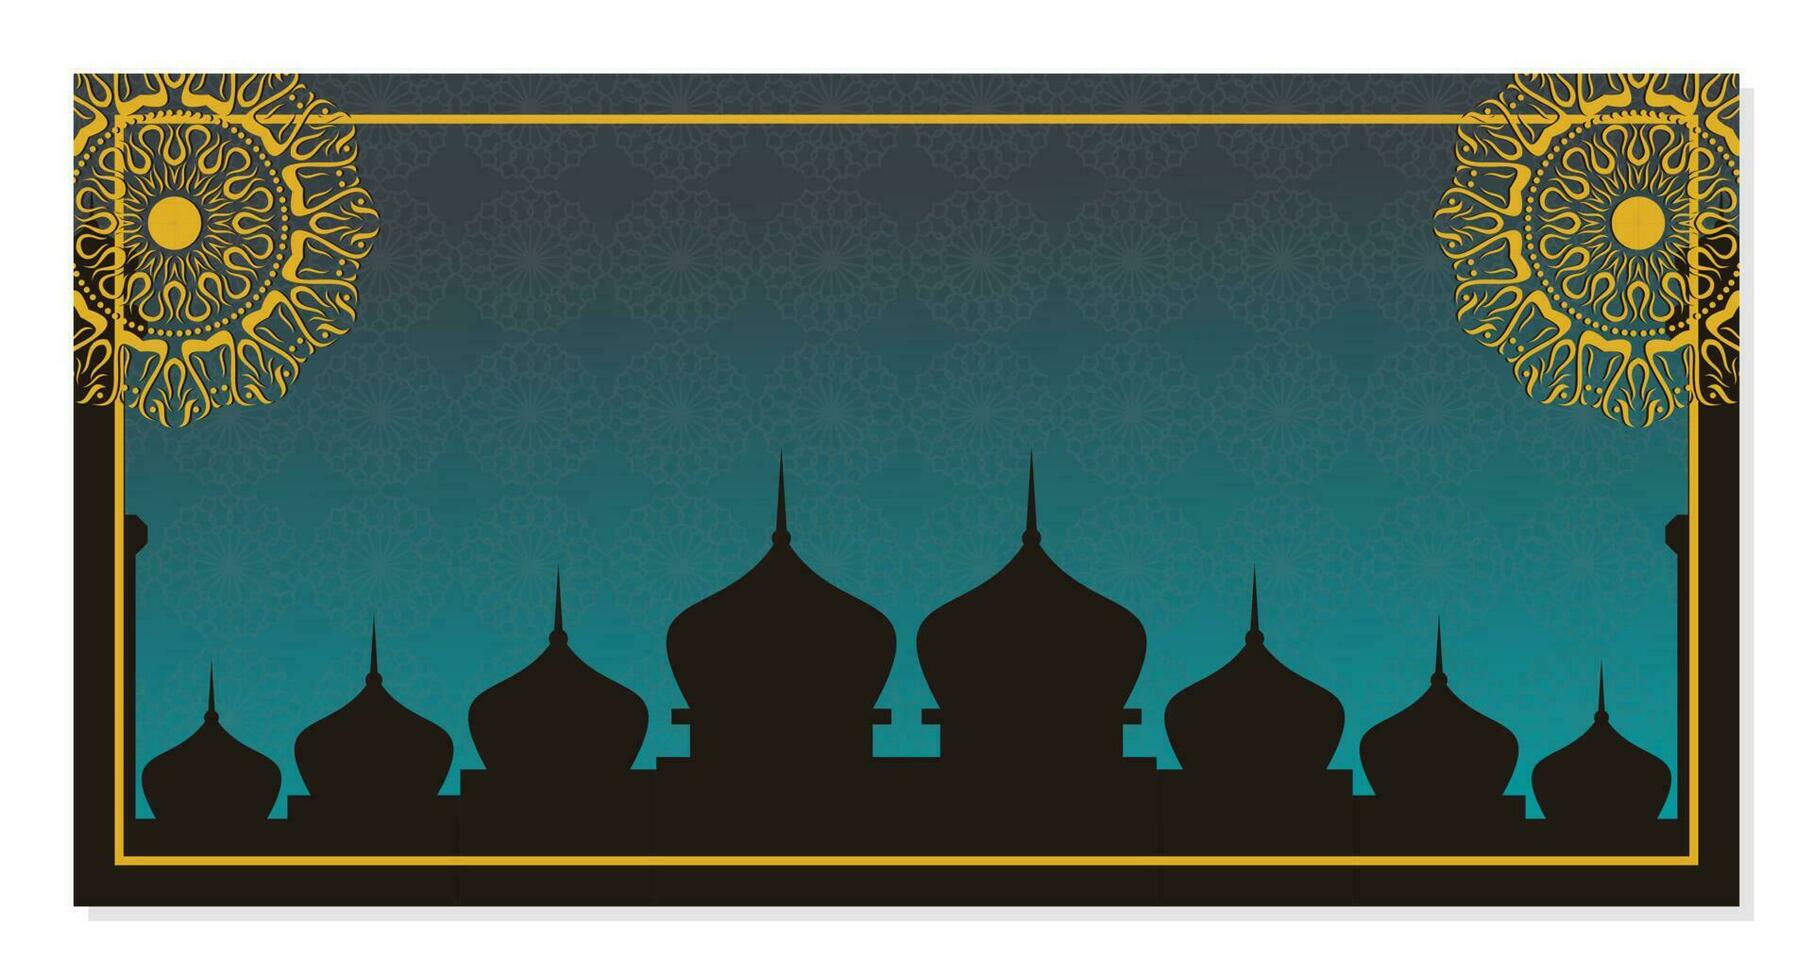 islámico fondo, con hermosa mandala ornamento. vector modelo para pancartas, saludo tarjetas para islámico vacaciones.